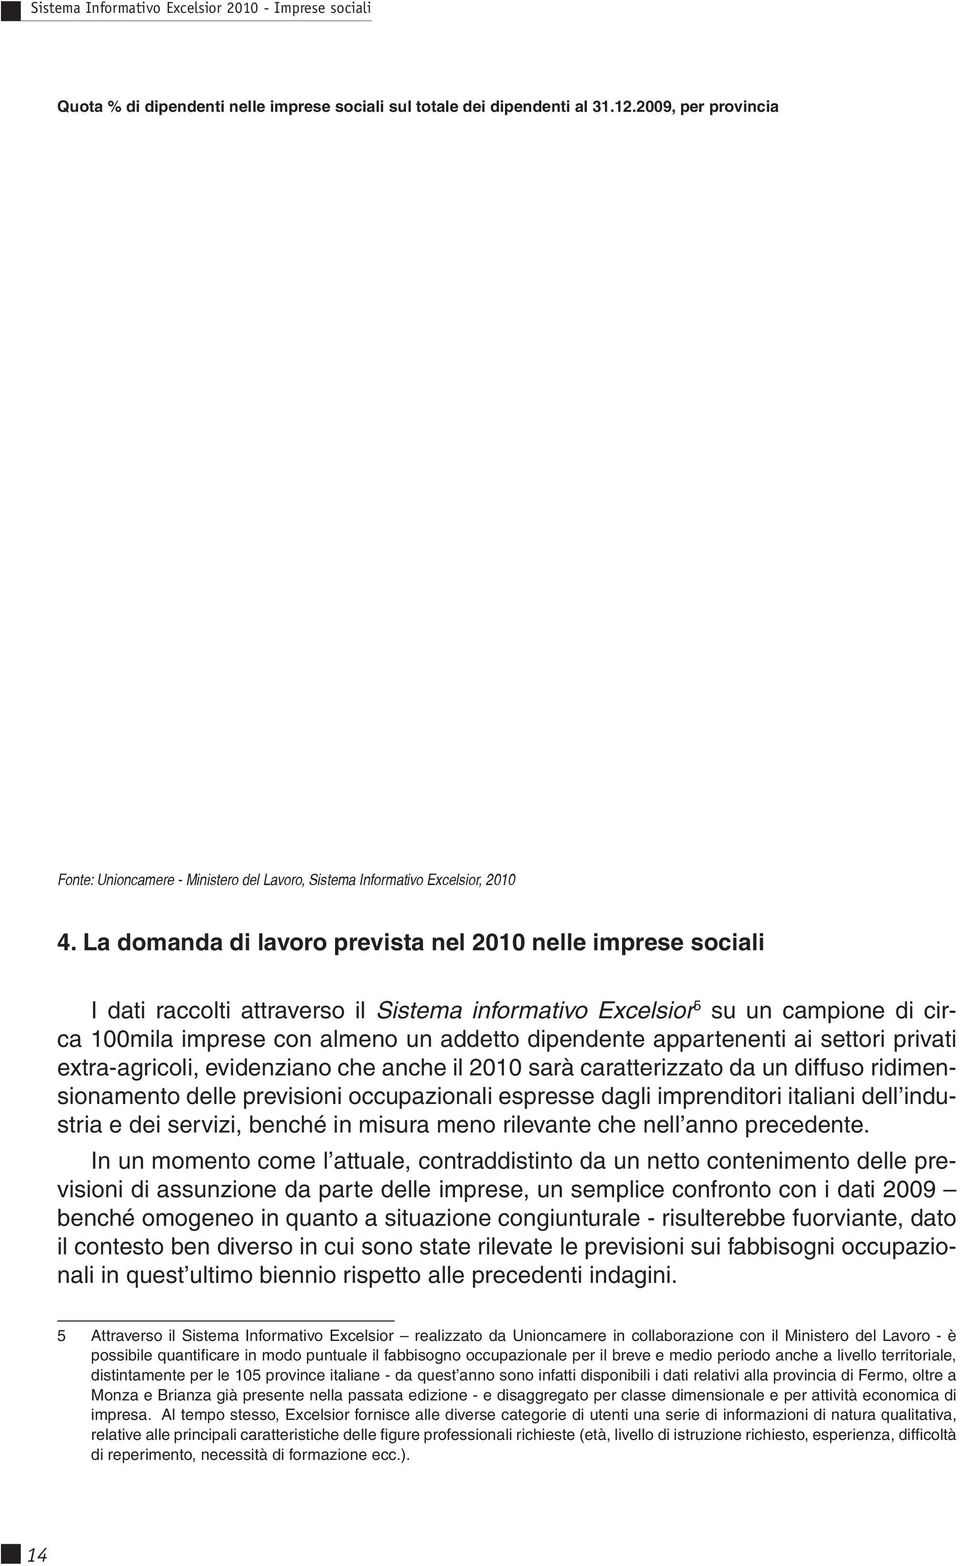 appartenenti ai settori privati extra-agricoli, evidenziano che anche il 2010 sarà caratterizzato da un diffuso ridimensionamento delle previsioni occupazionali espresse dagli imprenditori italiani